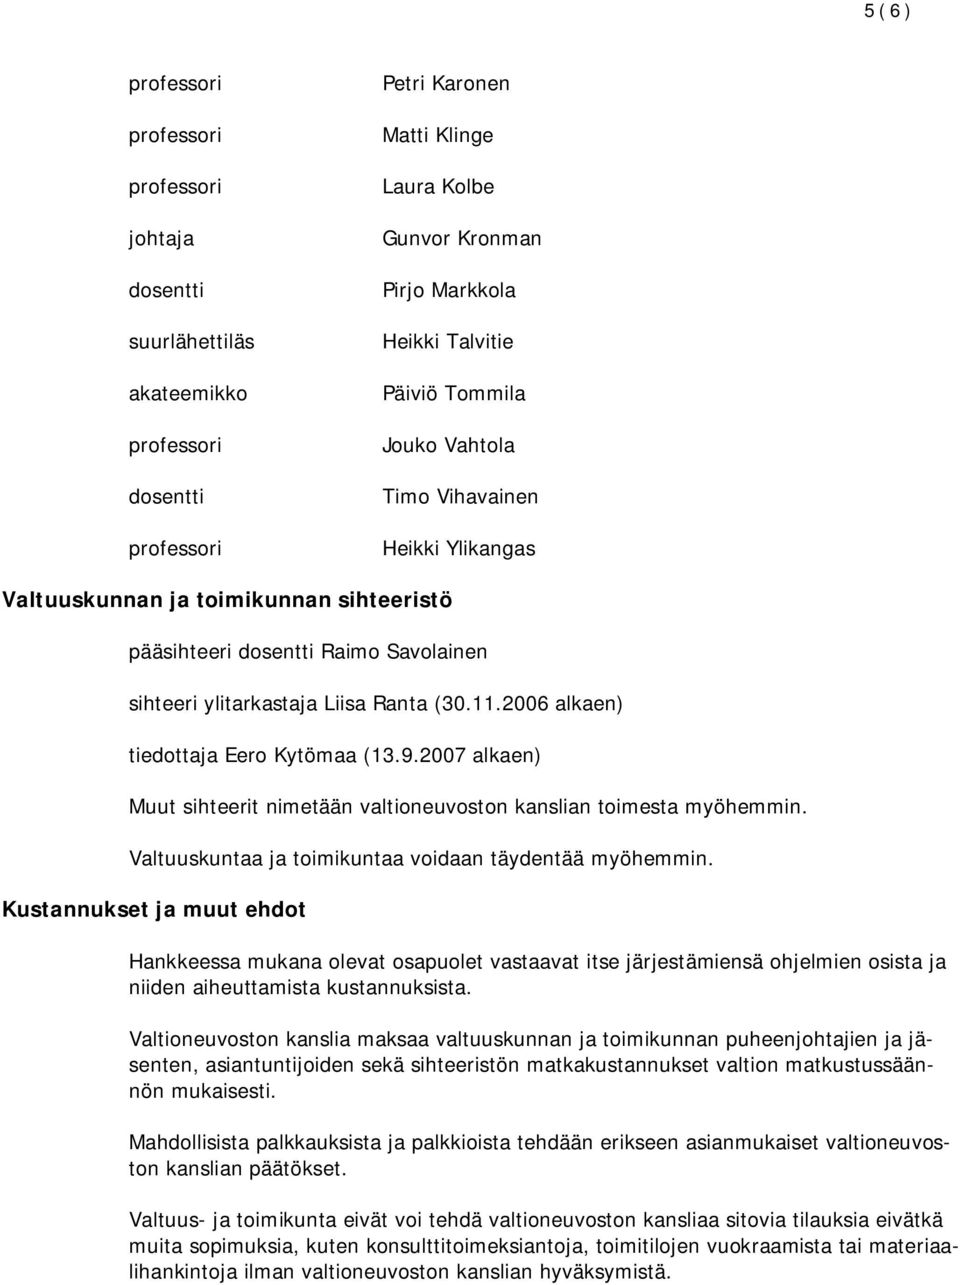 2006 alkaen) tiedottaja Eero Kytömaa Muut sihteerit nimetään valtioneuvoston kanslian toimesta myöhemmin. Valtuuskuntaa ja toimikuntaa voidaan täydentää myöhemmin.